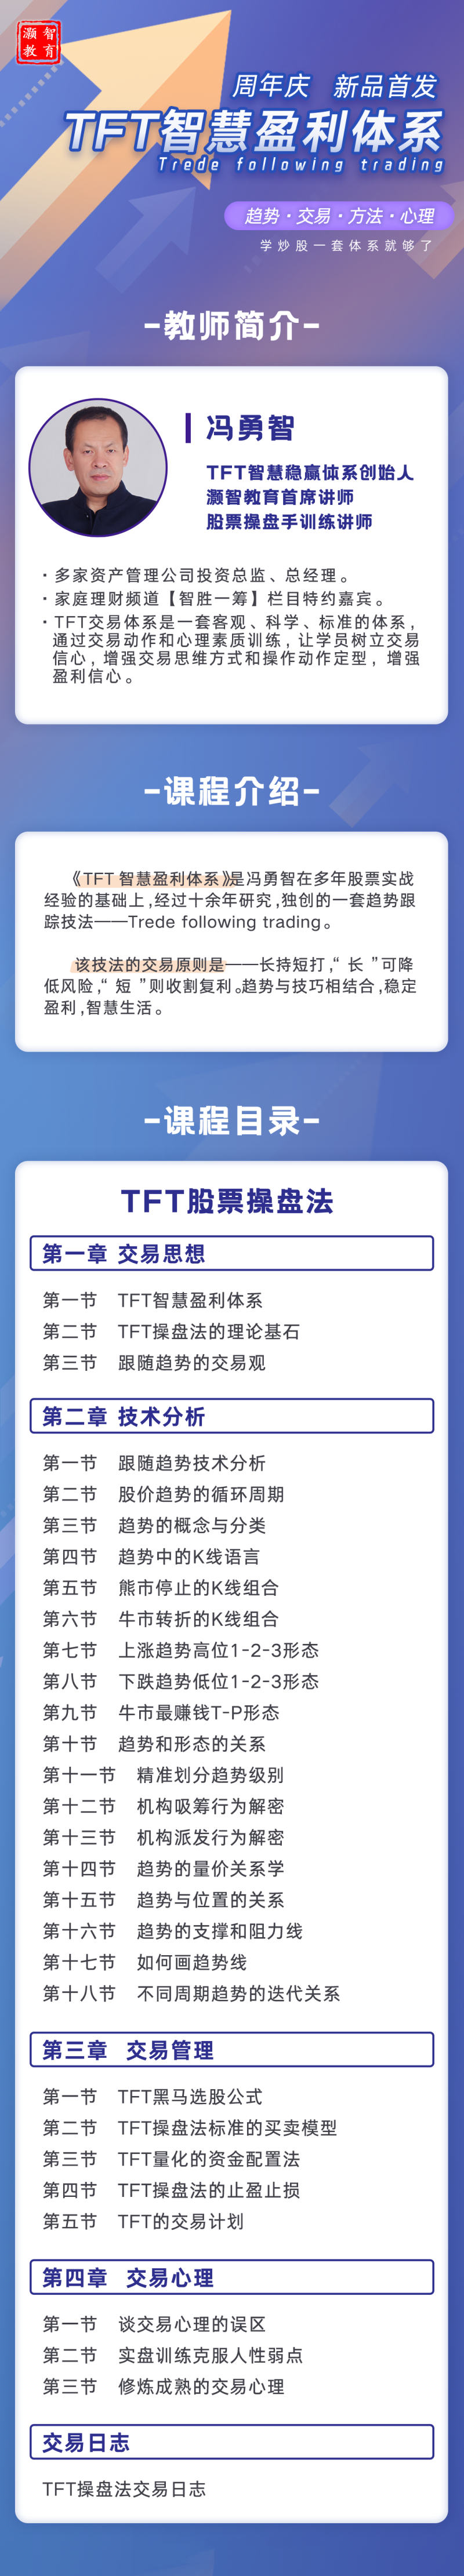 冯勇智―TFT智慧盈利体系趋势跟踪技法网盘分享插图2